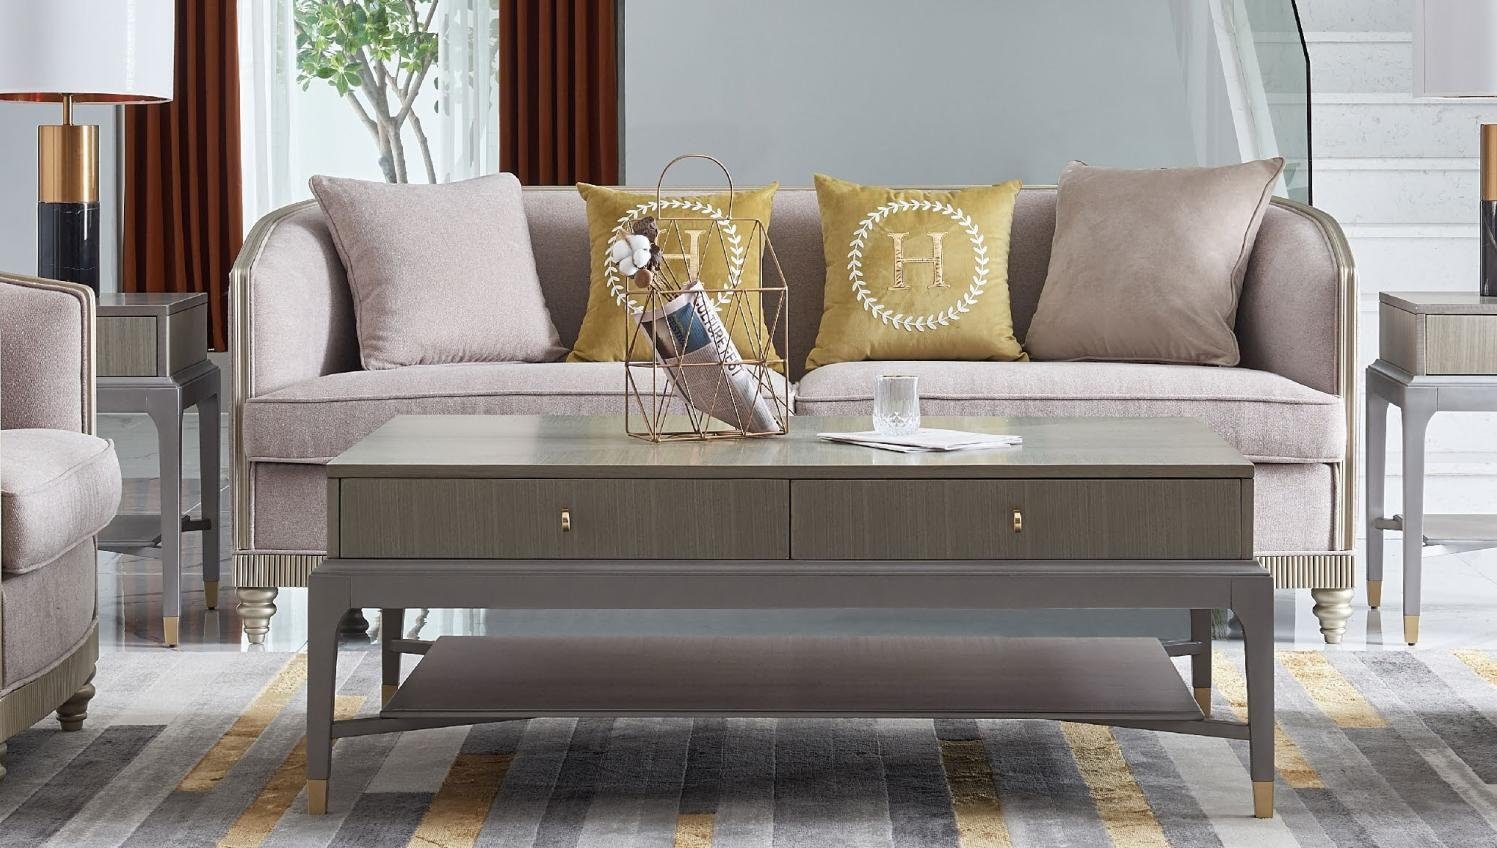 JVmoebel Sofa Textil Dreisitzer moderne Couch Neu, in 3-er Europe beige Made Polstermöbel